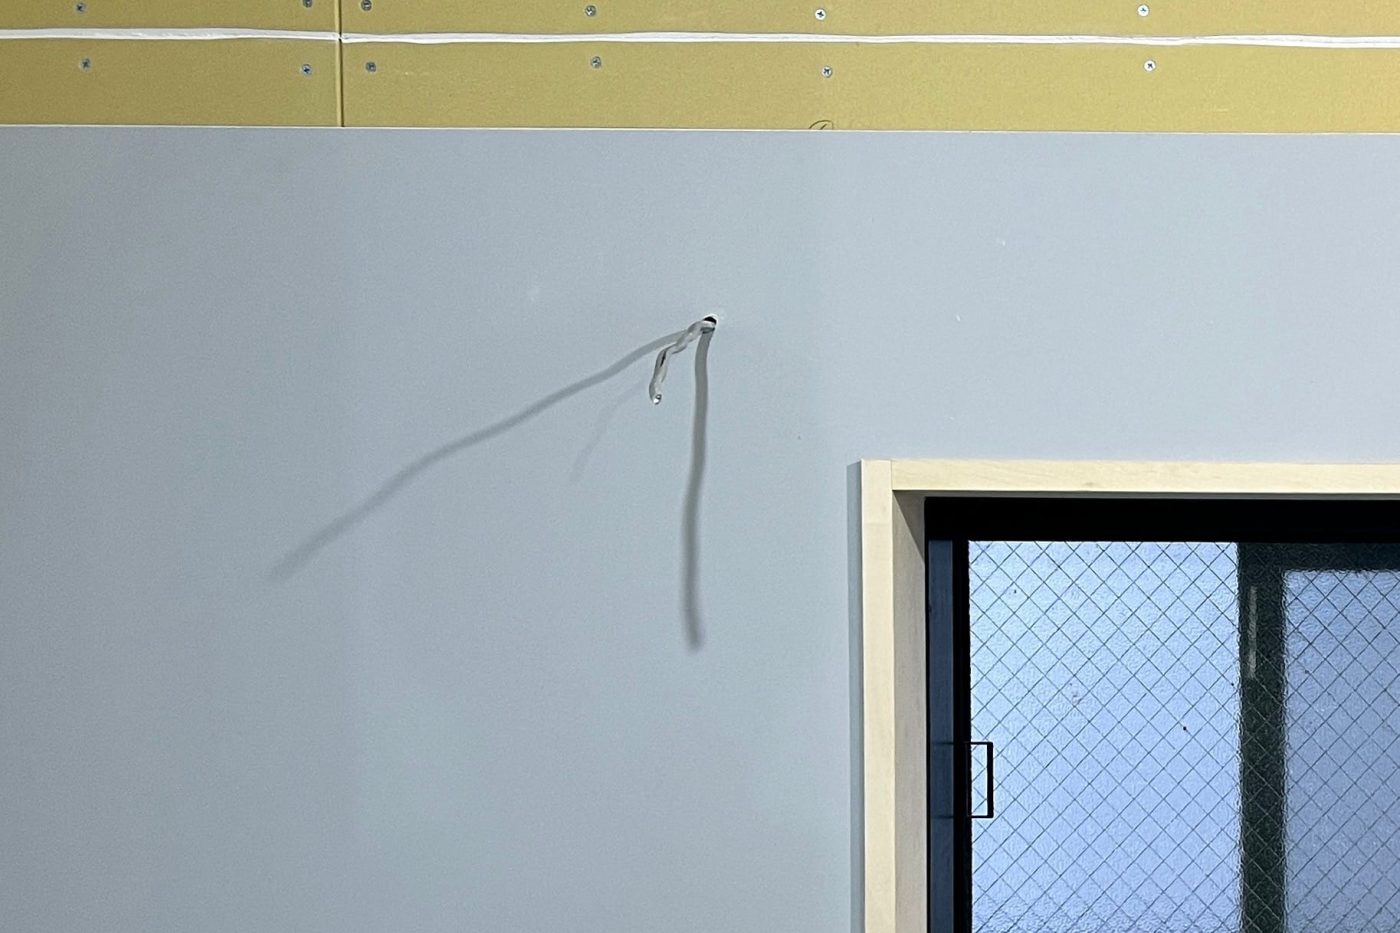 質感のよいキッチンの壁をつくるために「塗装のキッチンパネル」を貼ってみた39